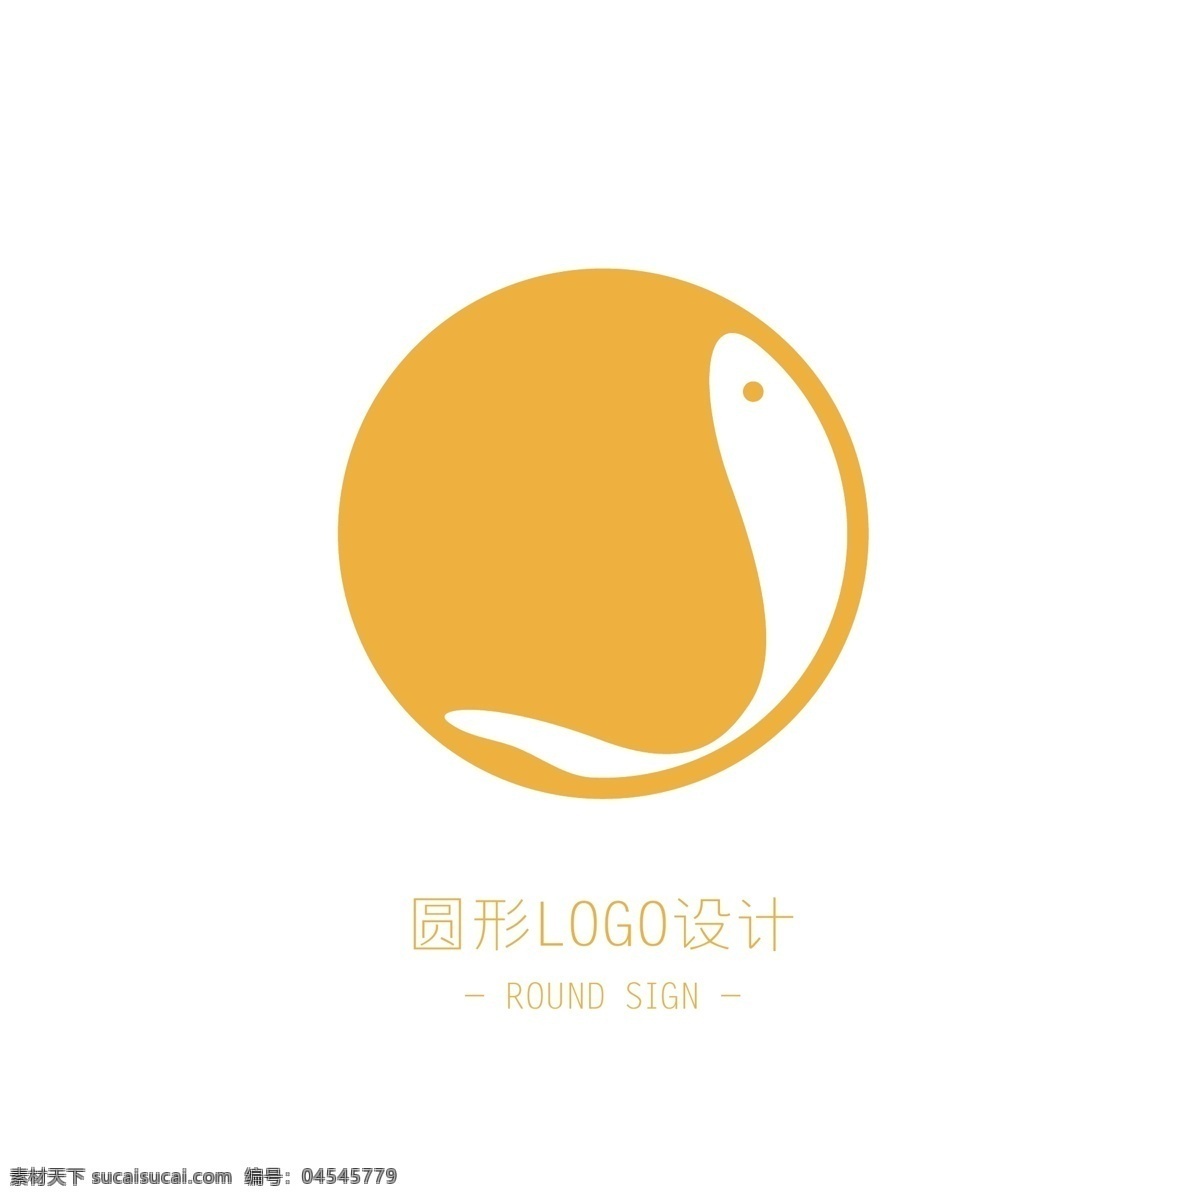 圆形 logo 图标 明月 小鱼 鱼 月 图标元素 logo设计